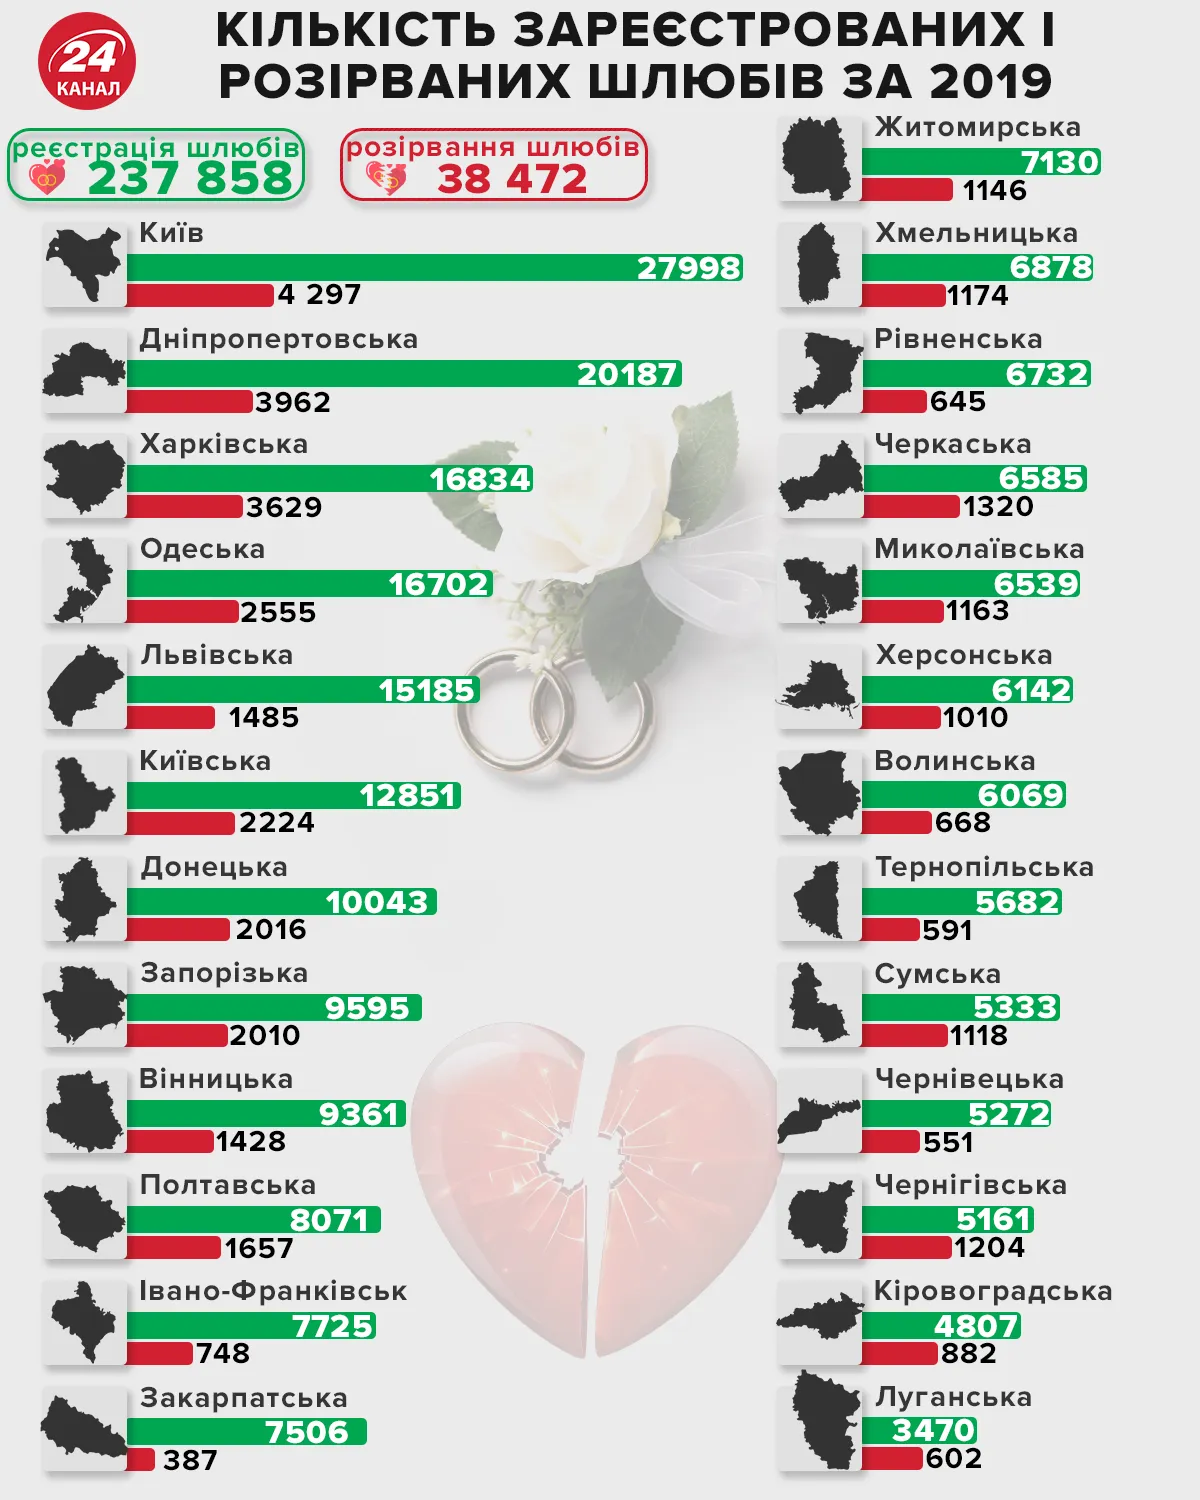 Кількість зареєстрованих шлюбів та одружень інфографіка 24 канал